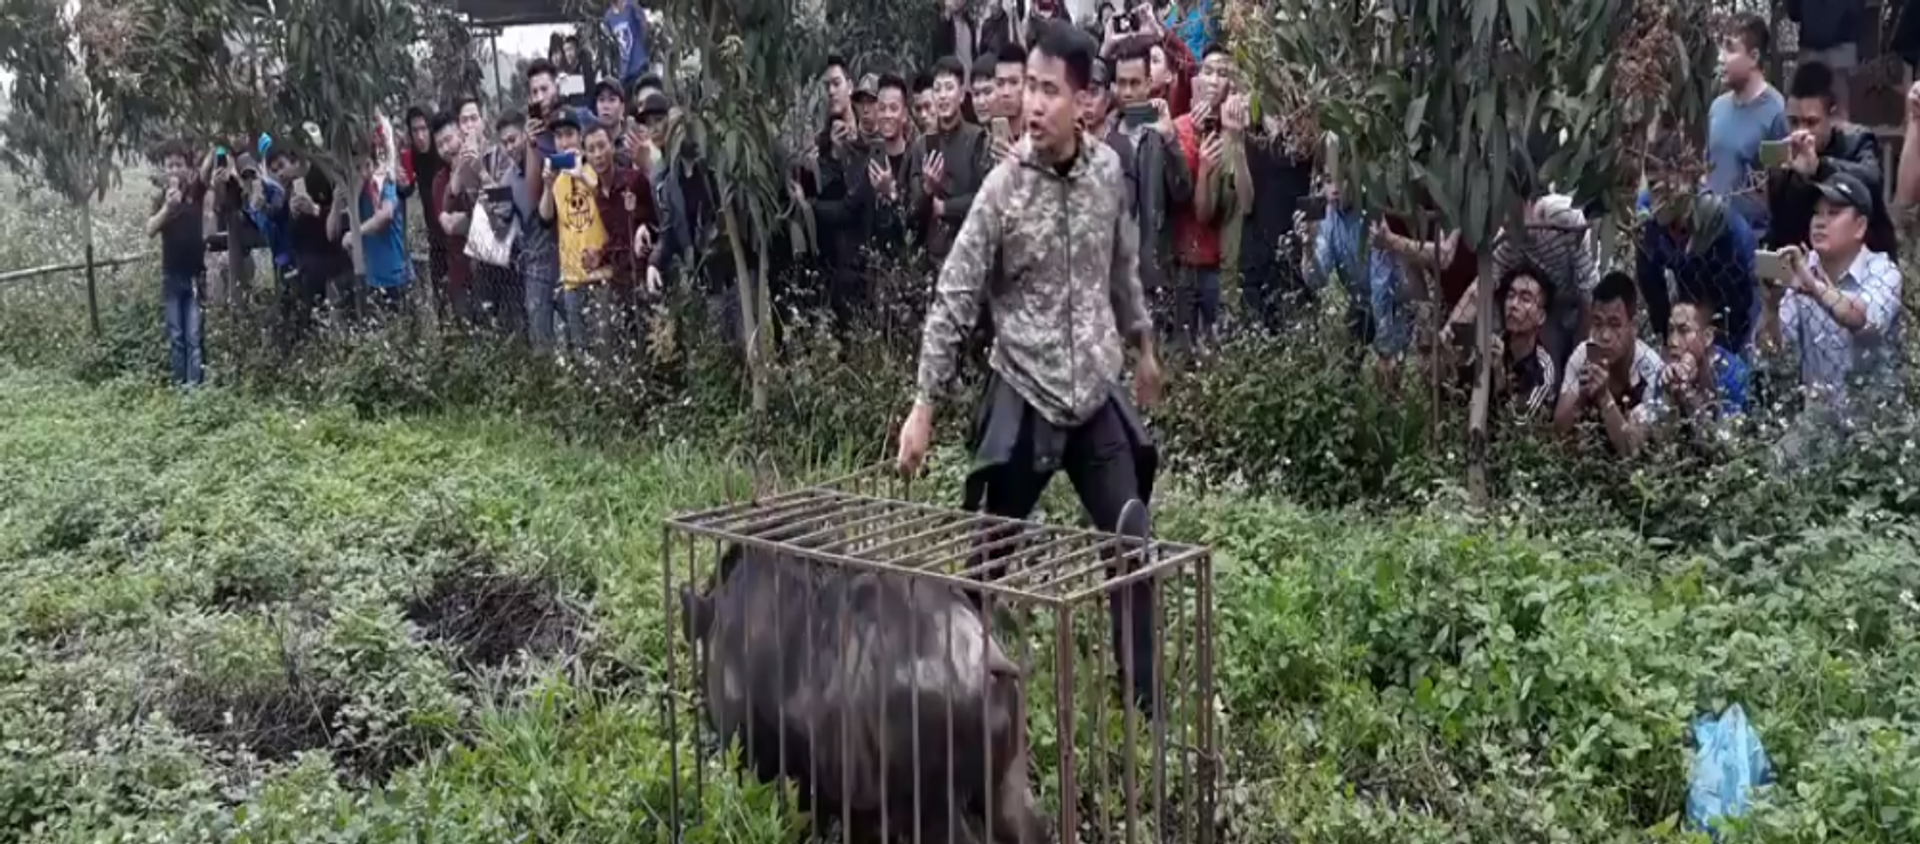 Chó săn lợn rừng - Sputnik Việt Nam, 1920, 26.03.2018